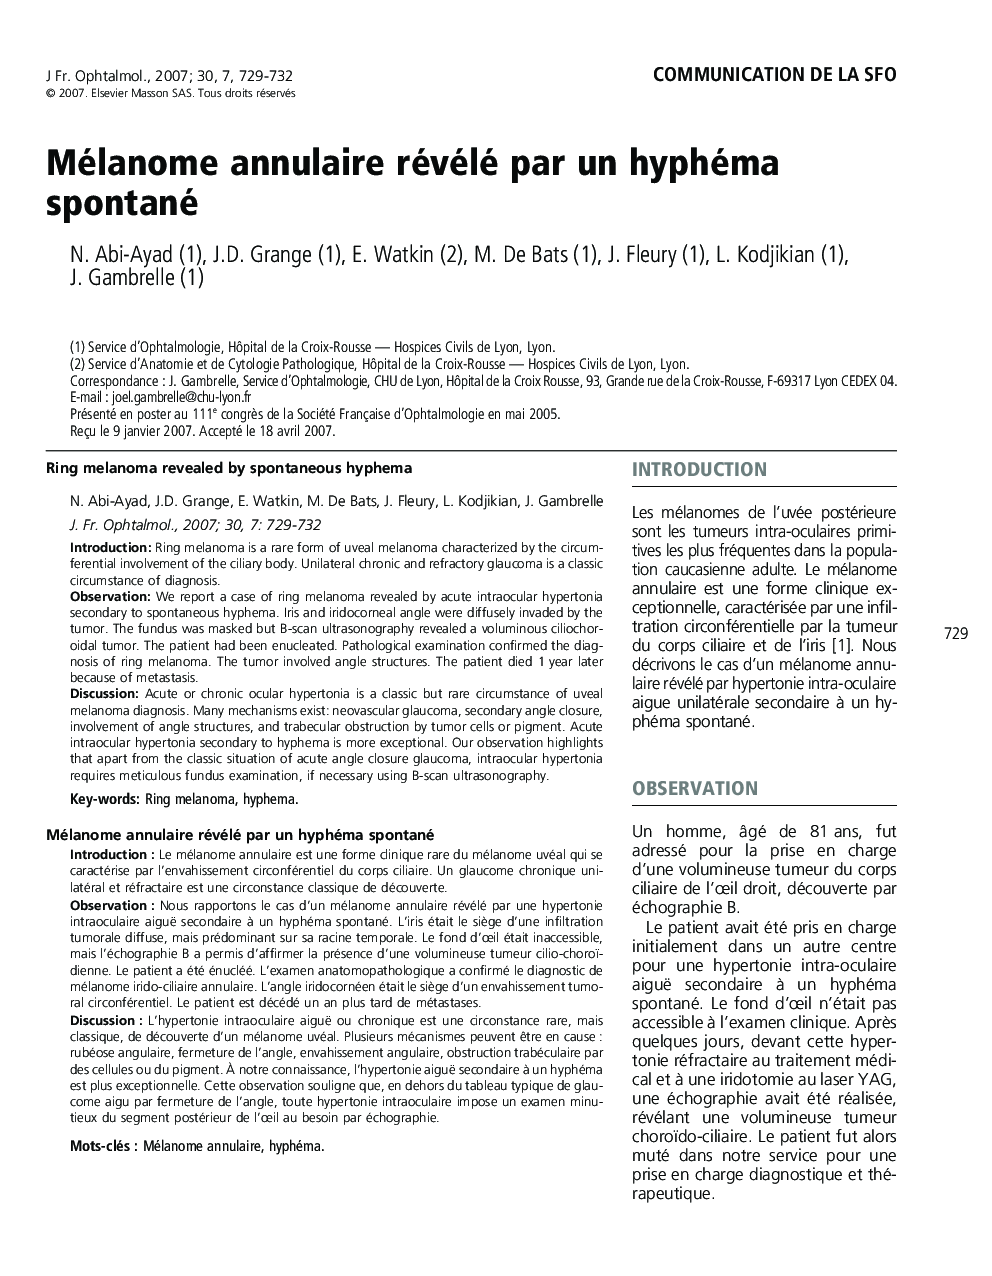 Communication de la SFOMélanome annulaire révélé par un hyphéma spontanéRing melanoma revealed by spontaneous hyphema